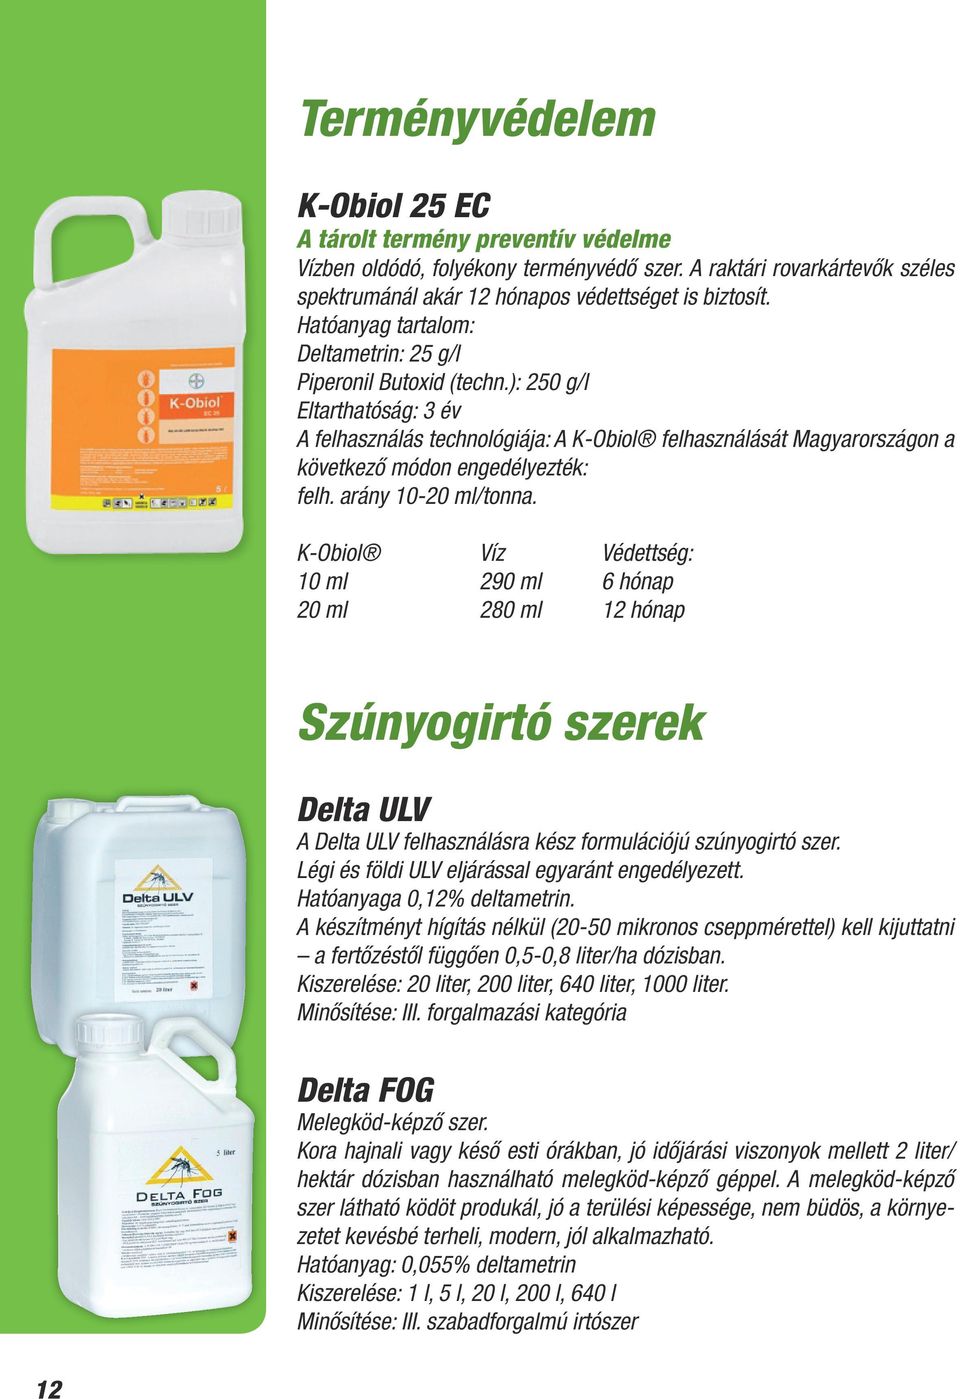 ): 250 g/l Eltarthatóság: 3 év A felhasználás technológiája: A K-Obiol felhasználását Magyarországon a következő módon engedélyezték: felh. arány 10-20 ml/tonna.